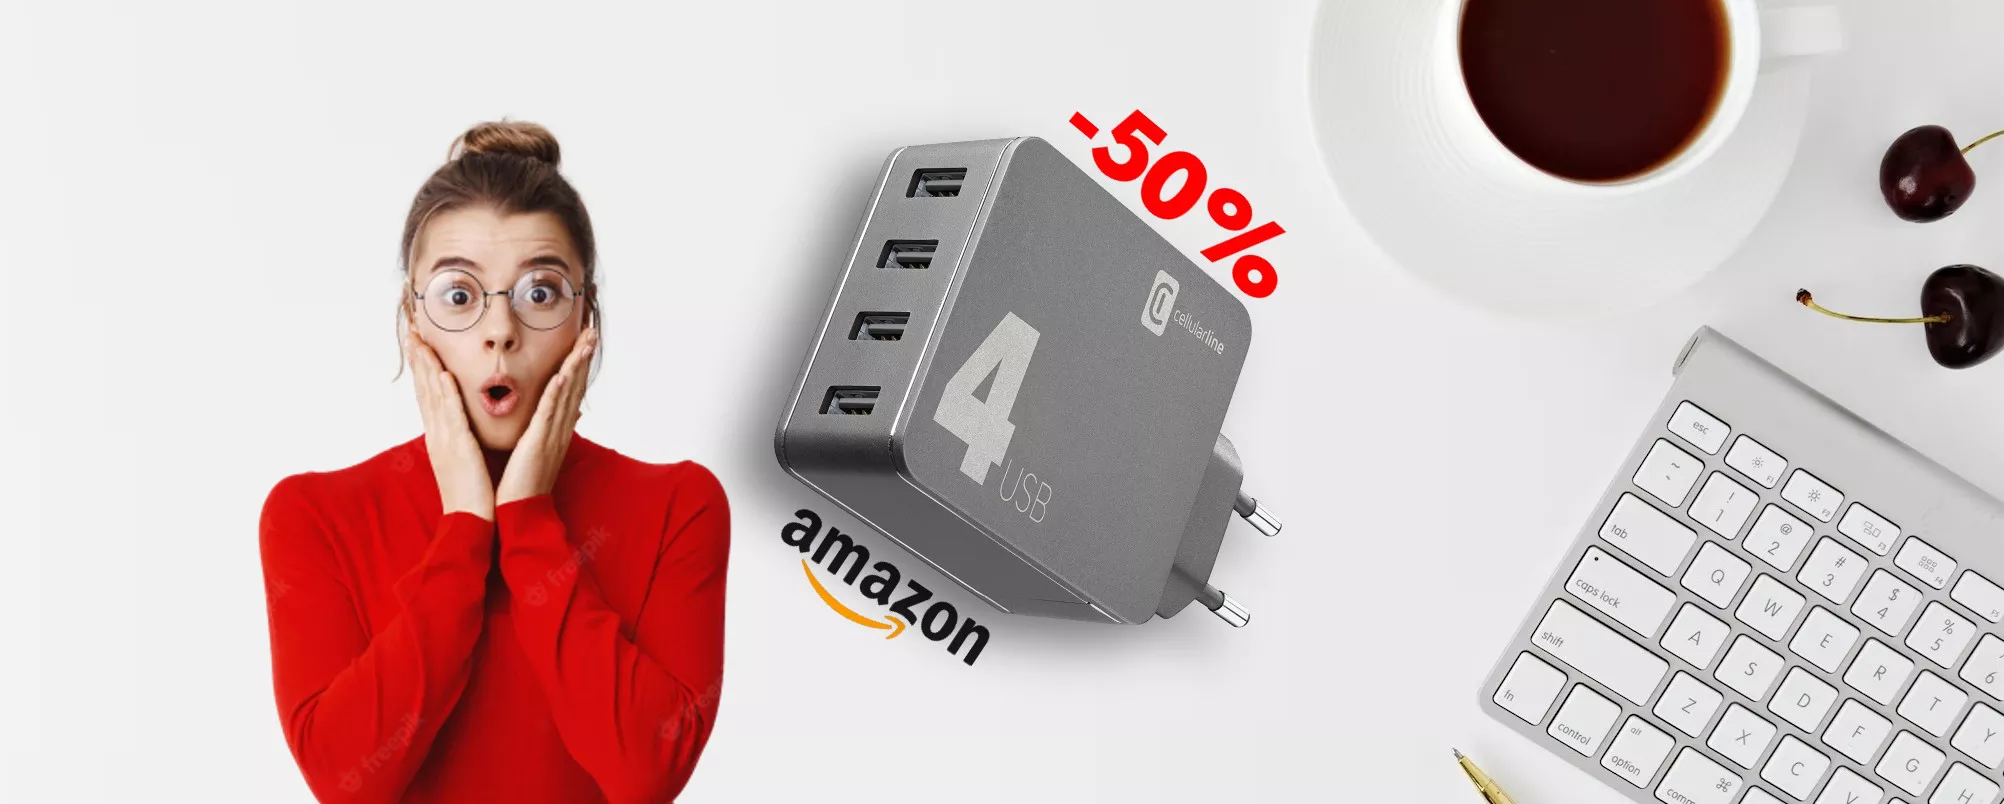 Caricabatterie Multipower 42W con 4 USB in OFFERTA al 50% su Amazon